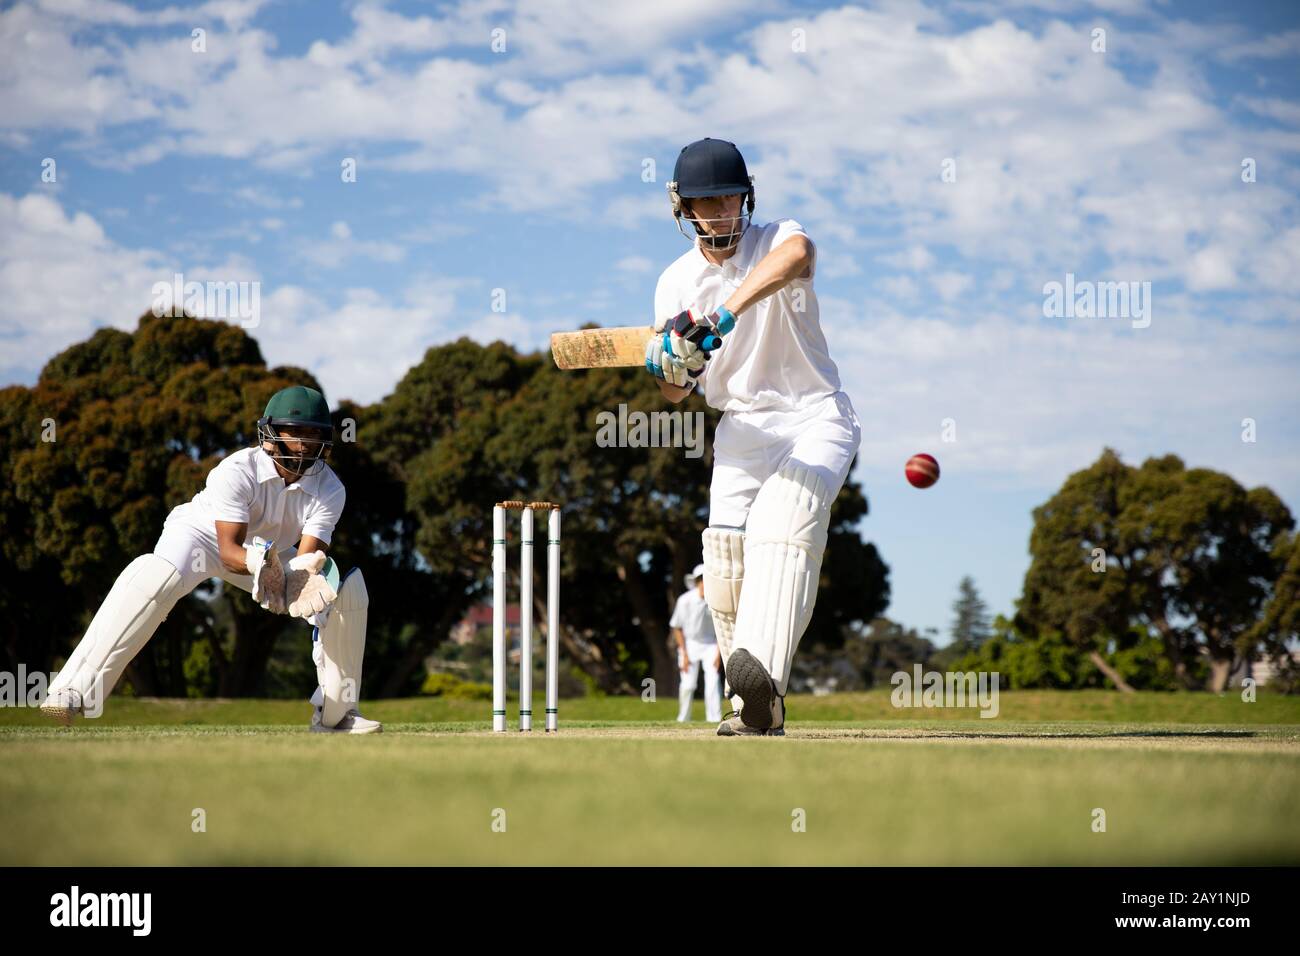 Cricket-Spieler schießen im Ball Stockfoto